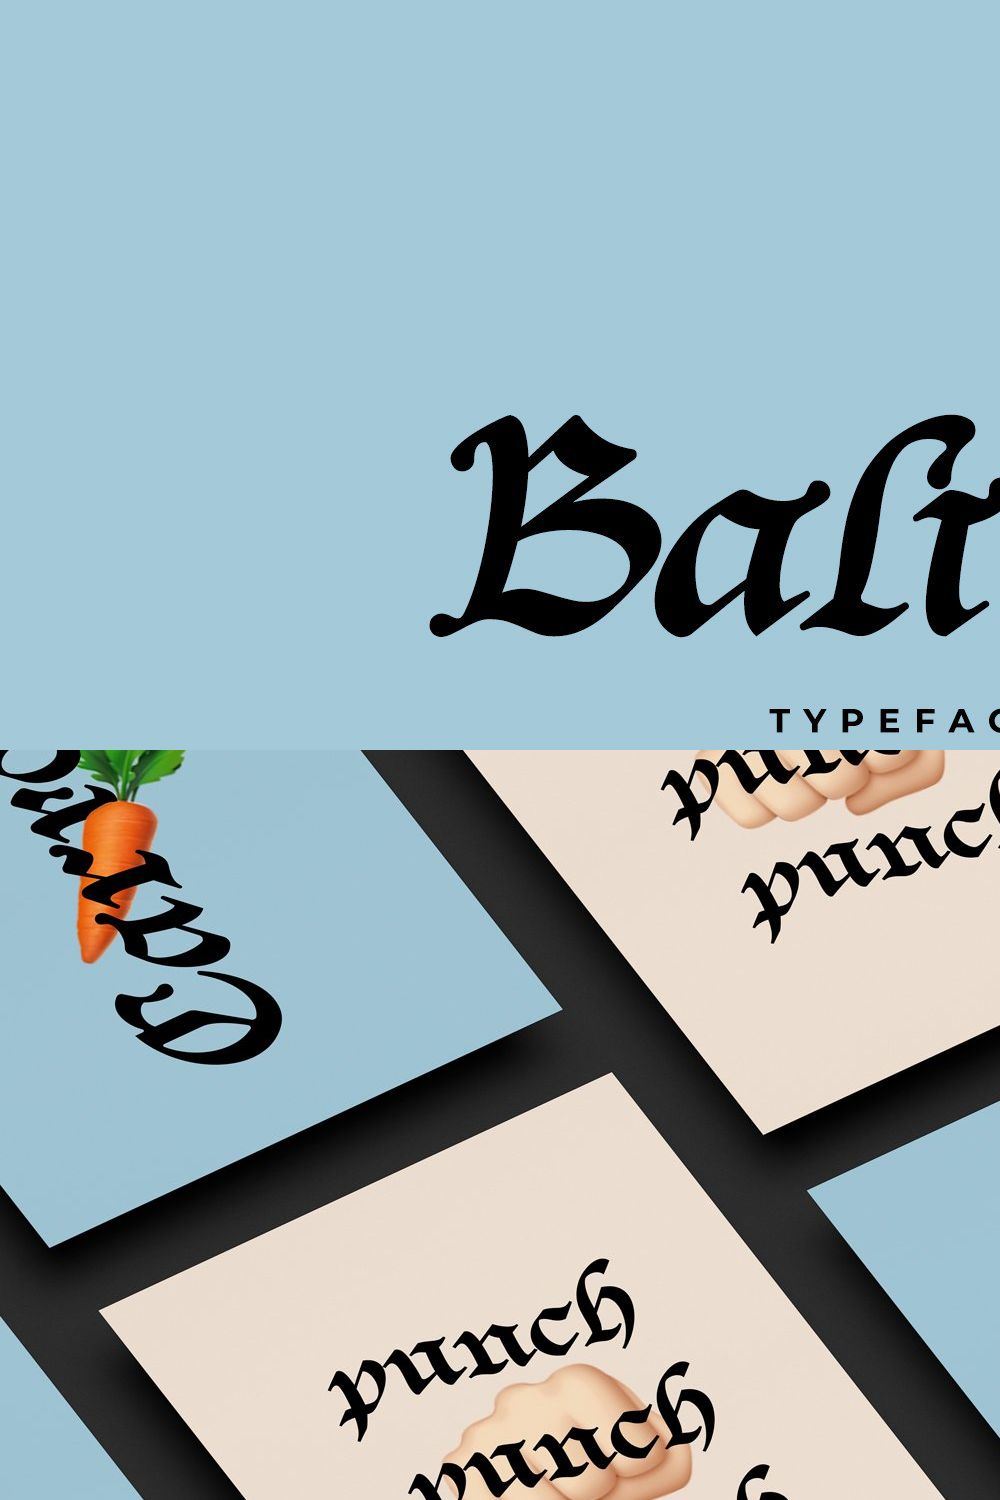 Baliem Typeface pinterest preview image.